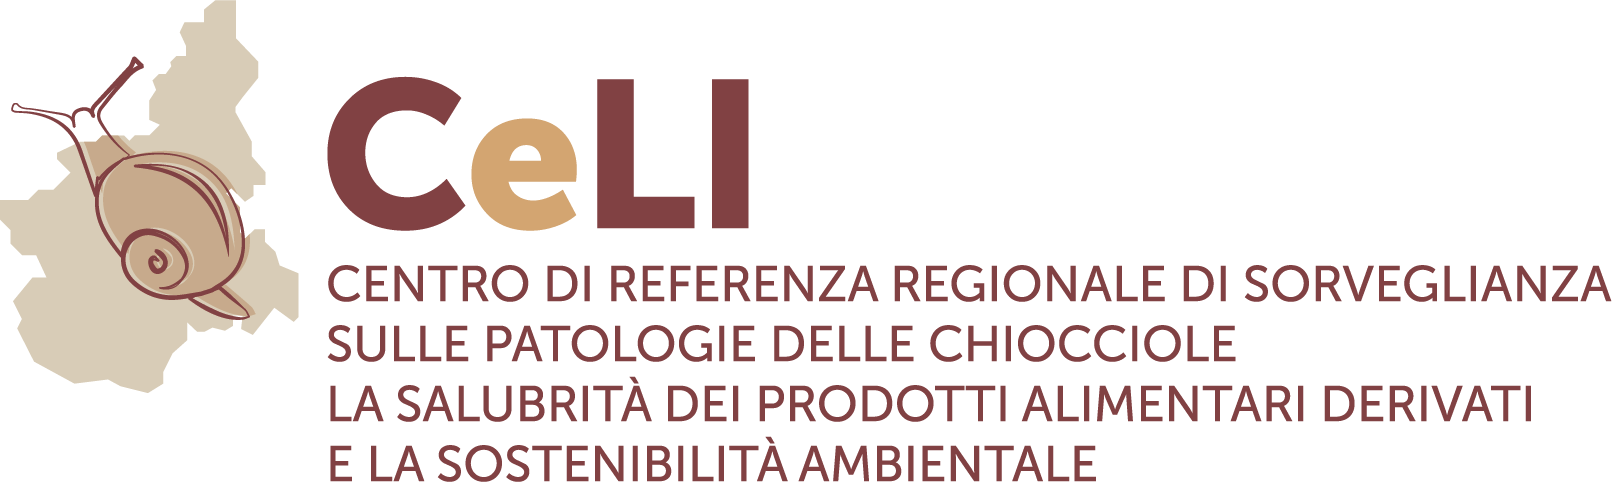 Logo CELI